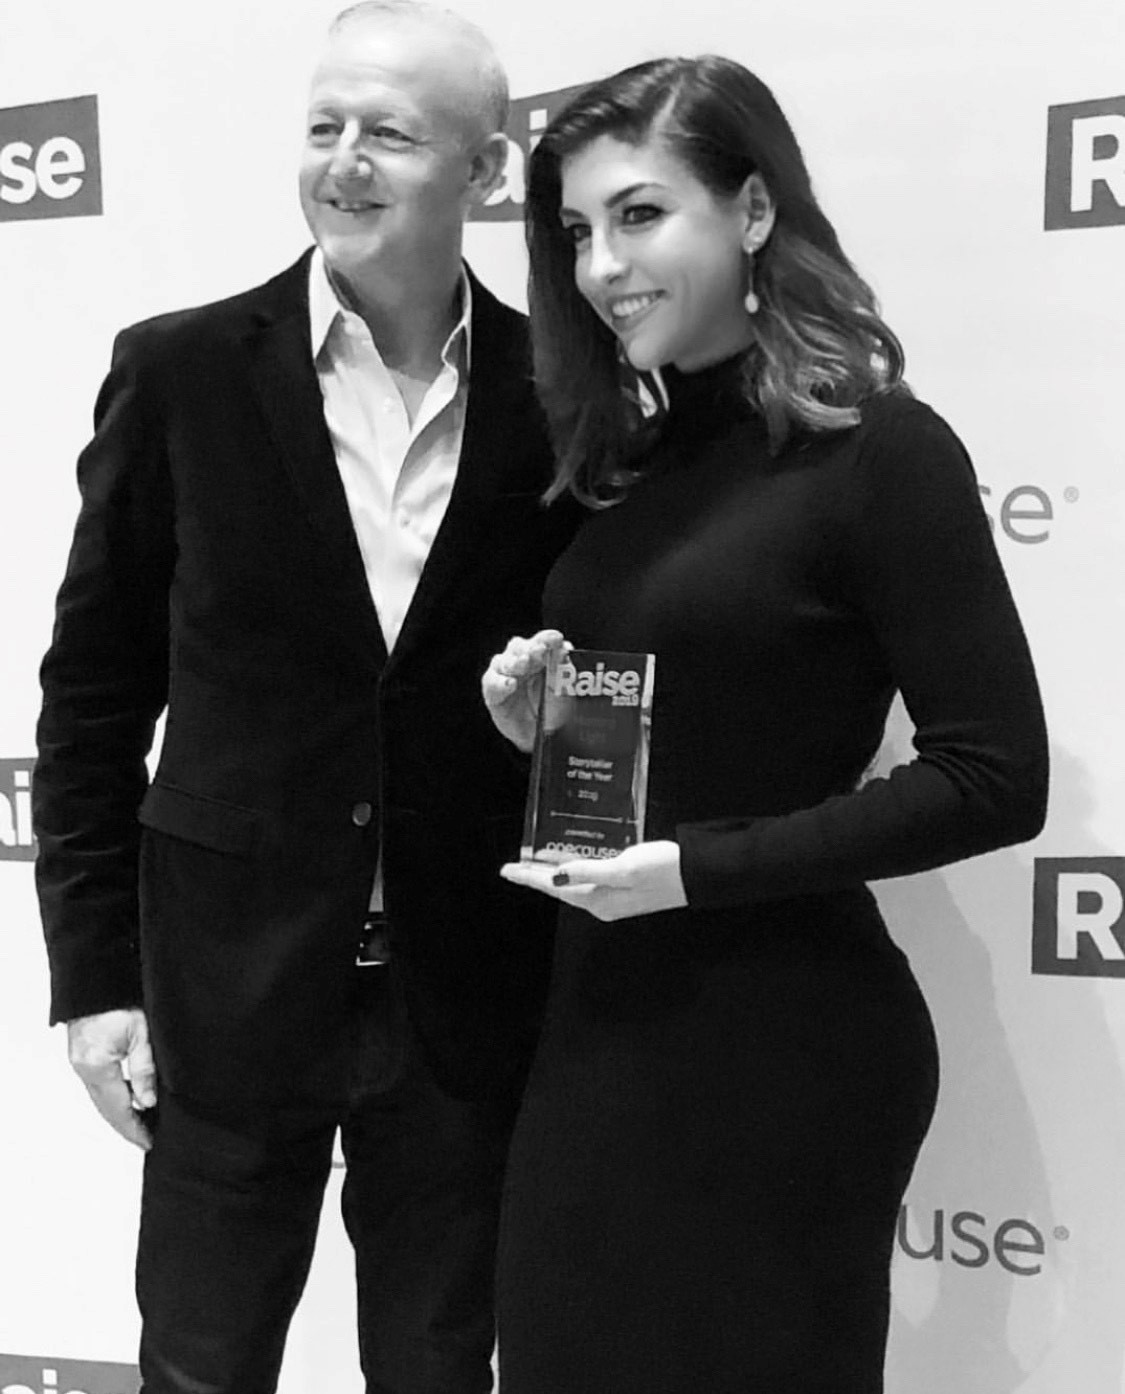 Madison Gonzalez with Raise award